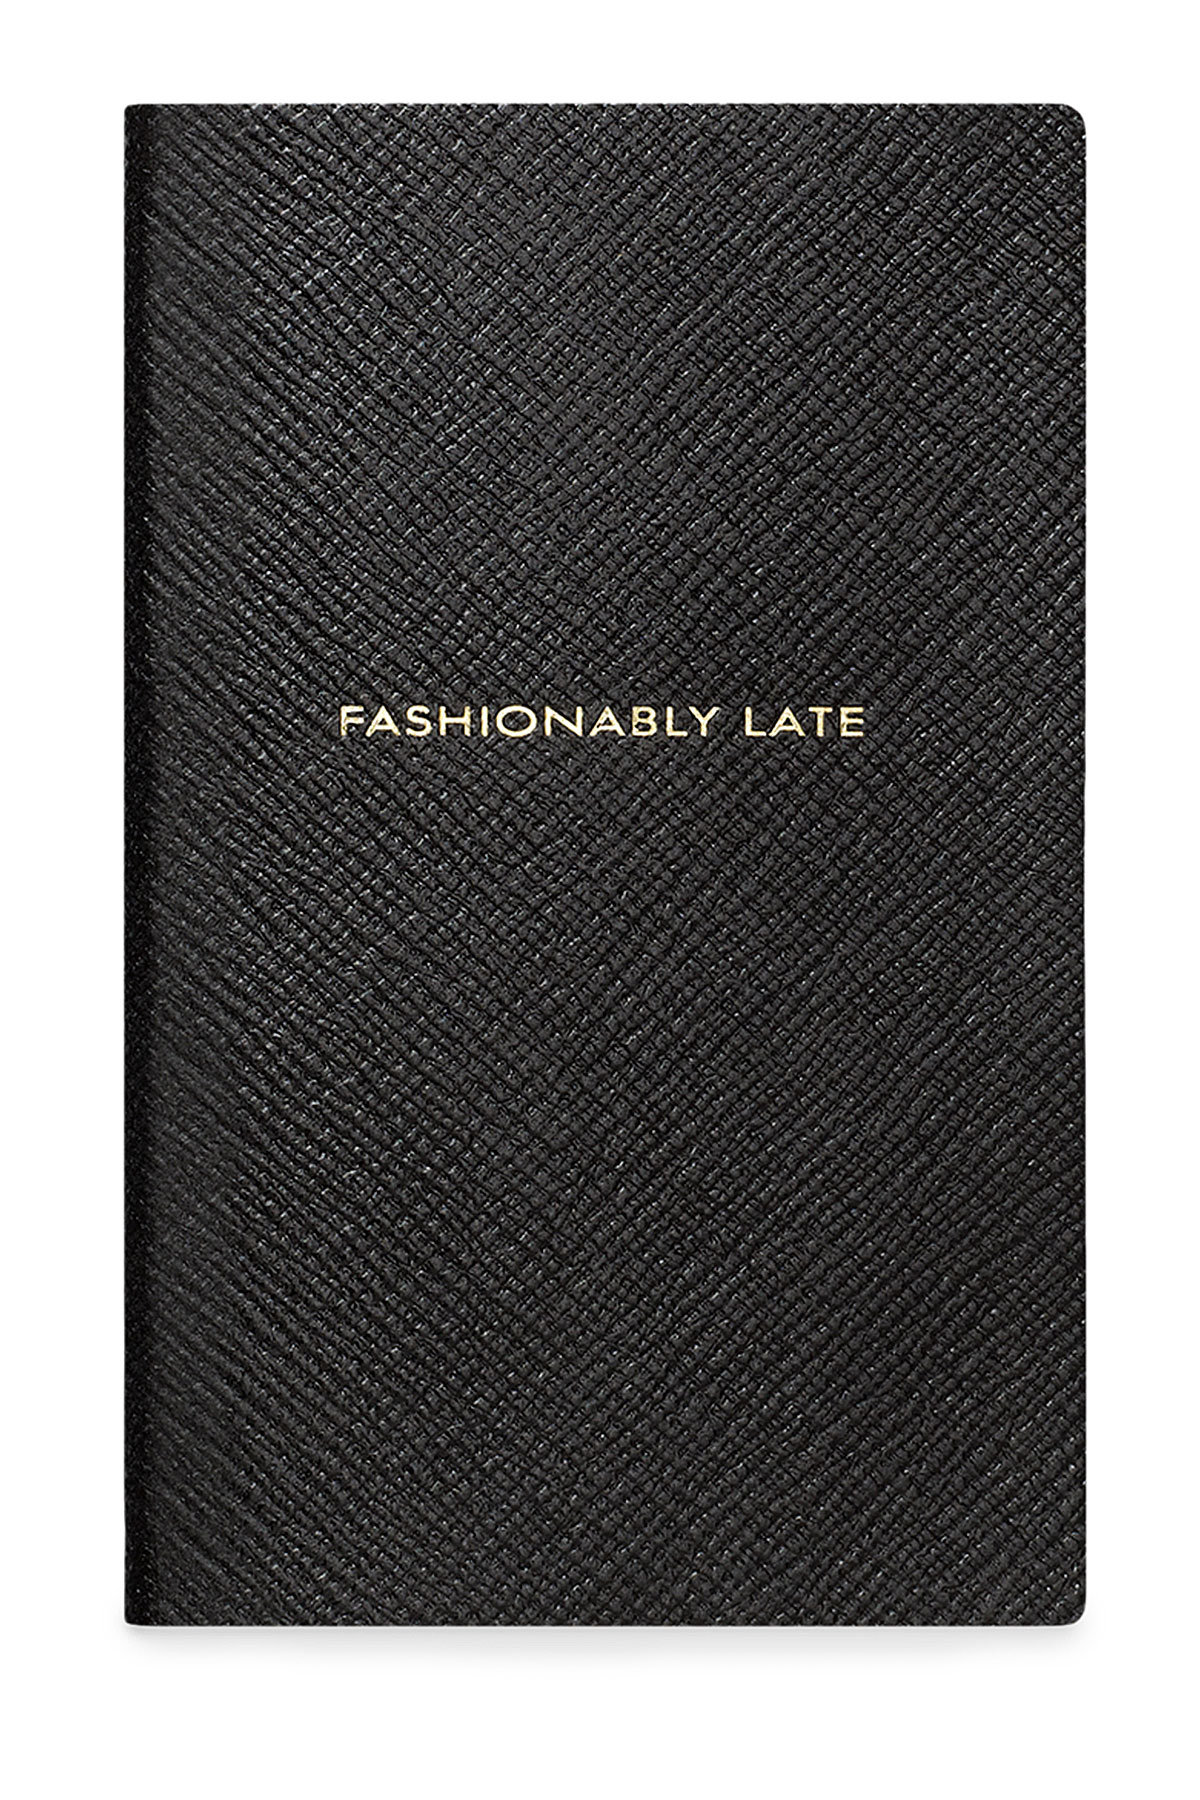 Smythson - Panama Fashionably Late Leather Notebook